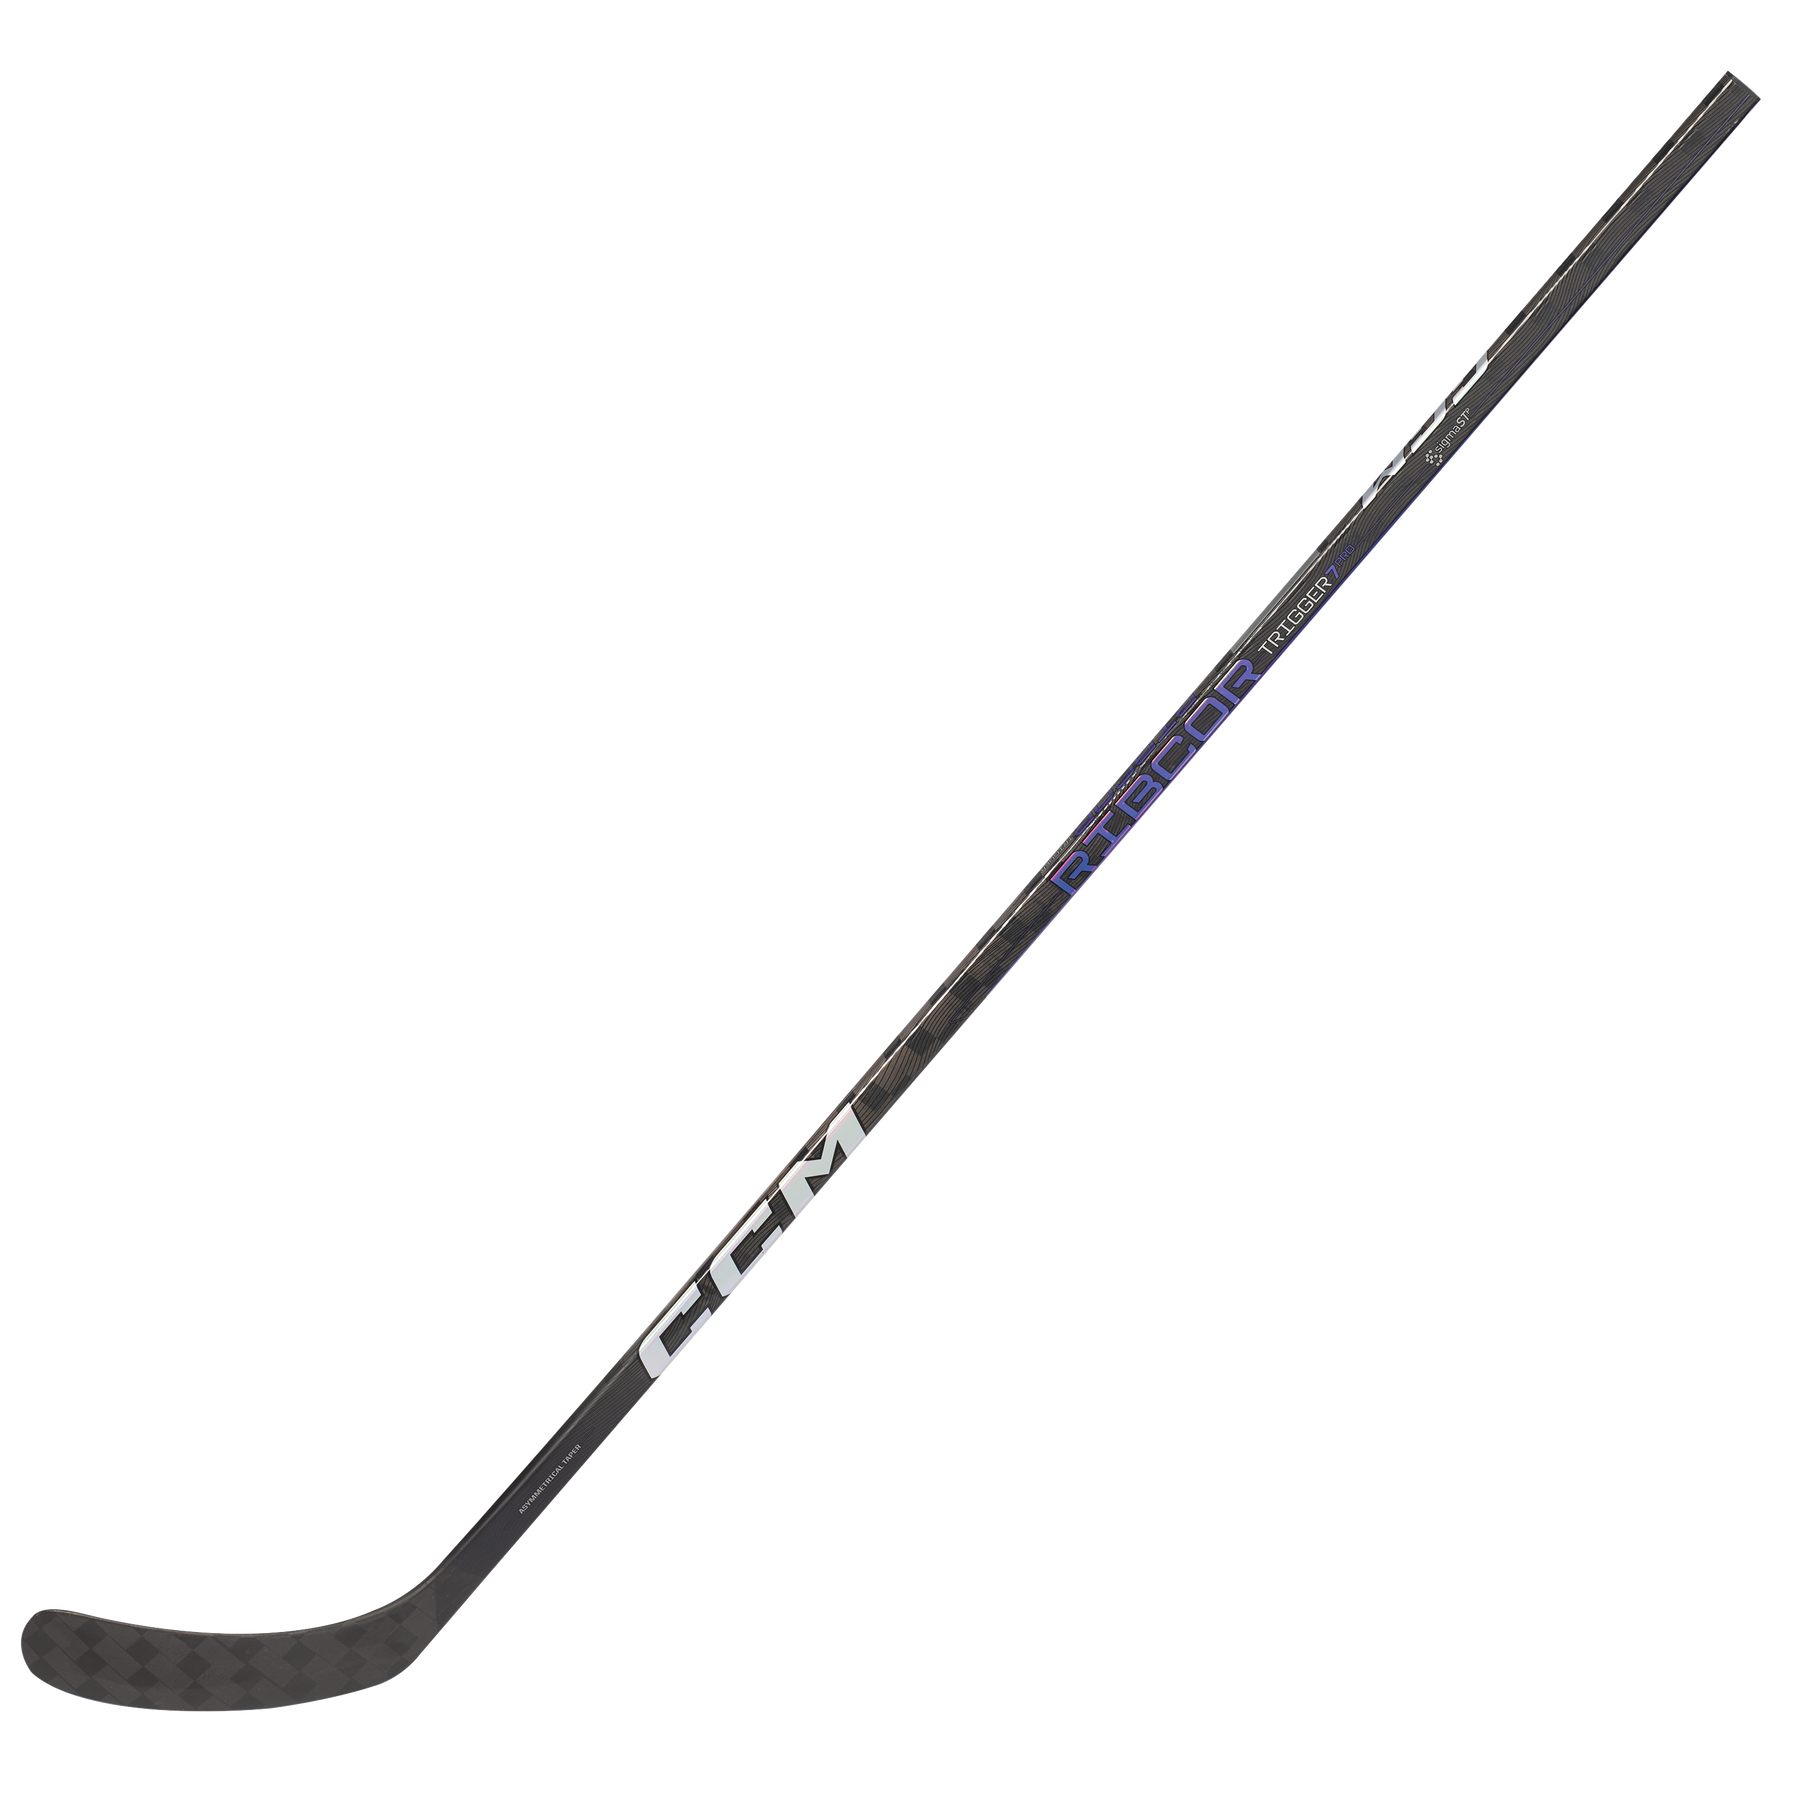 CCM Ribcor Trigger 7 Pro Junior Hockey Stick